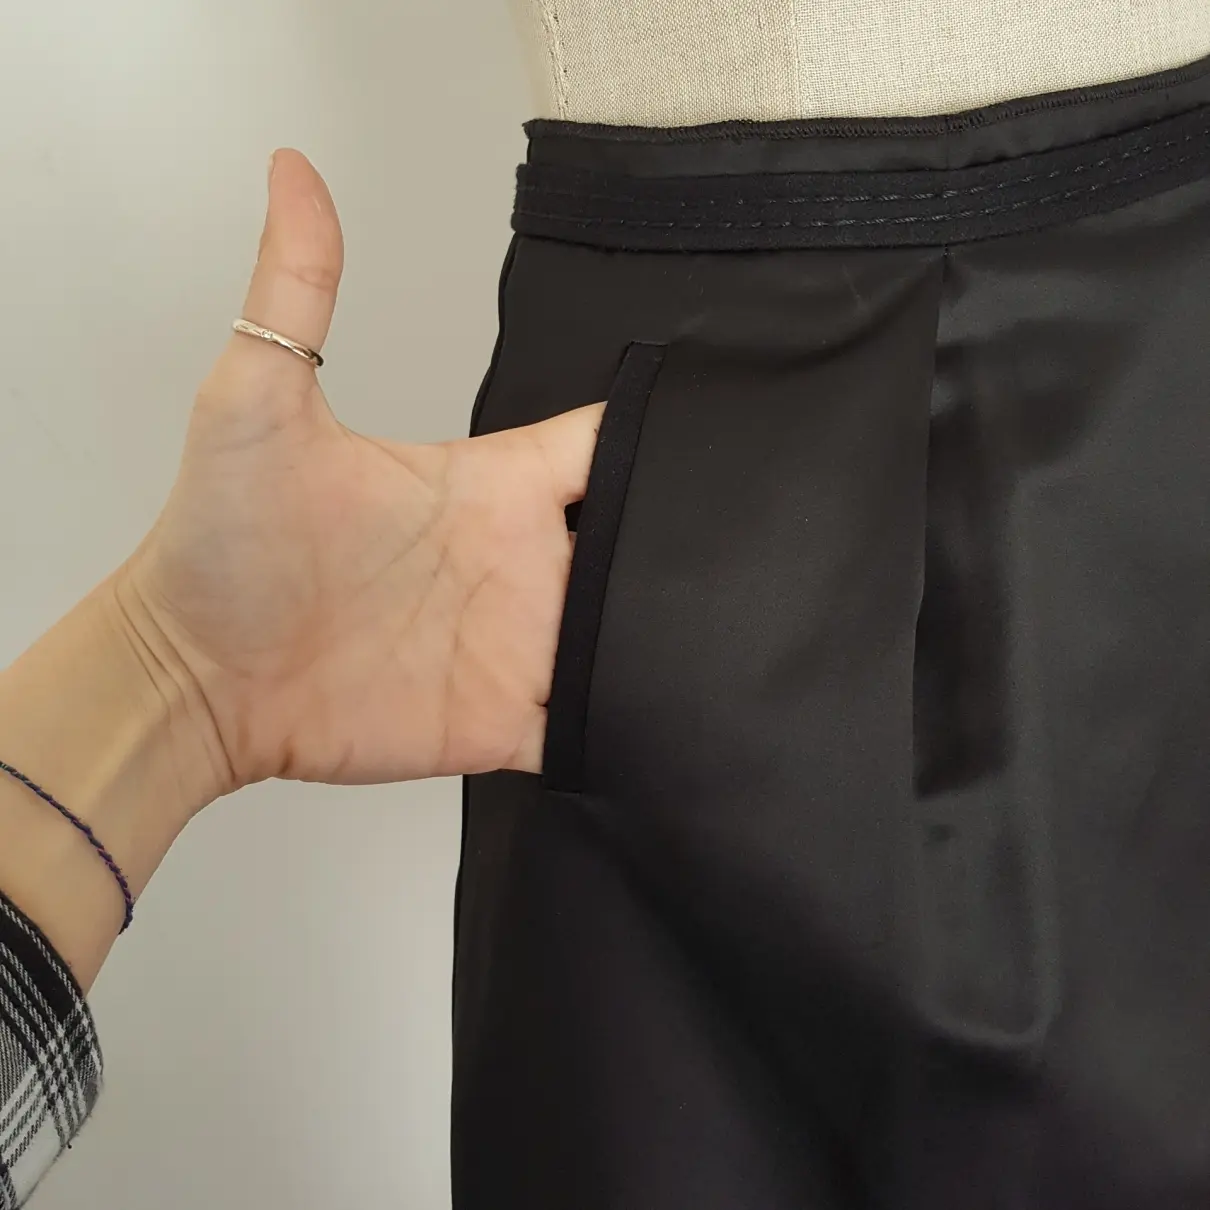 Buy Max & Co Mid-length skirt online